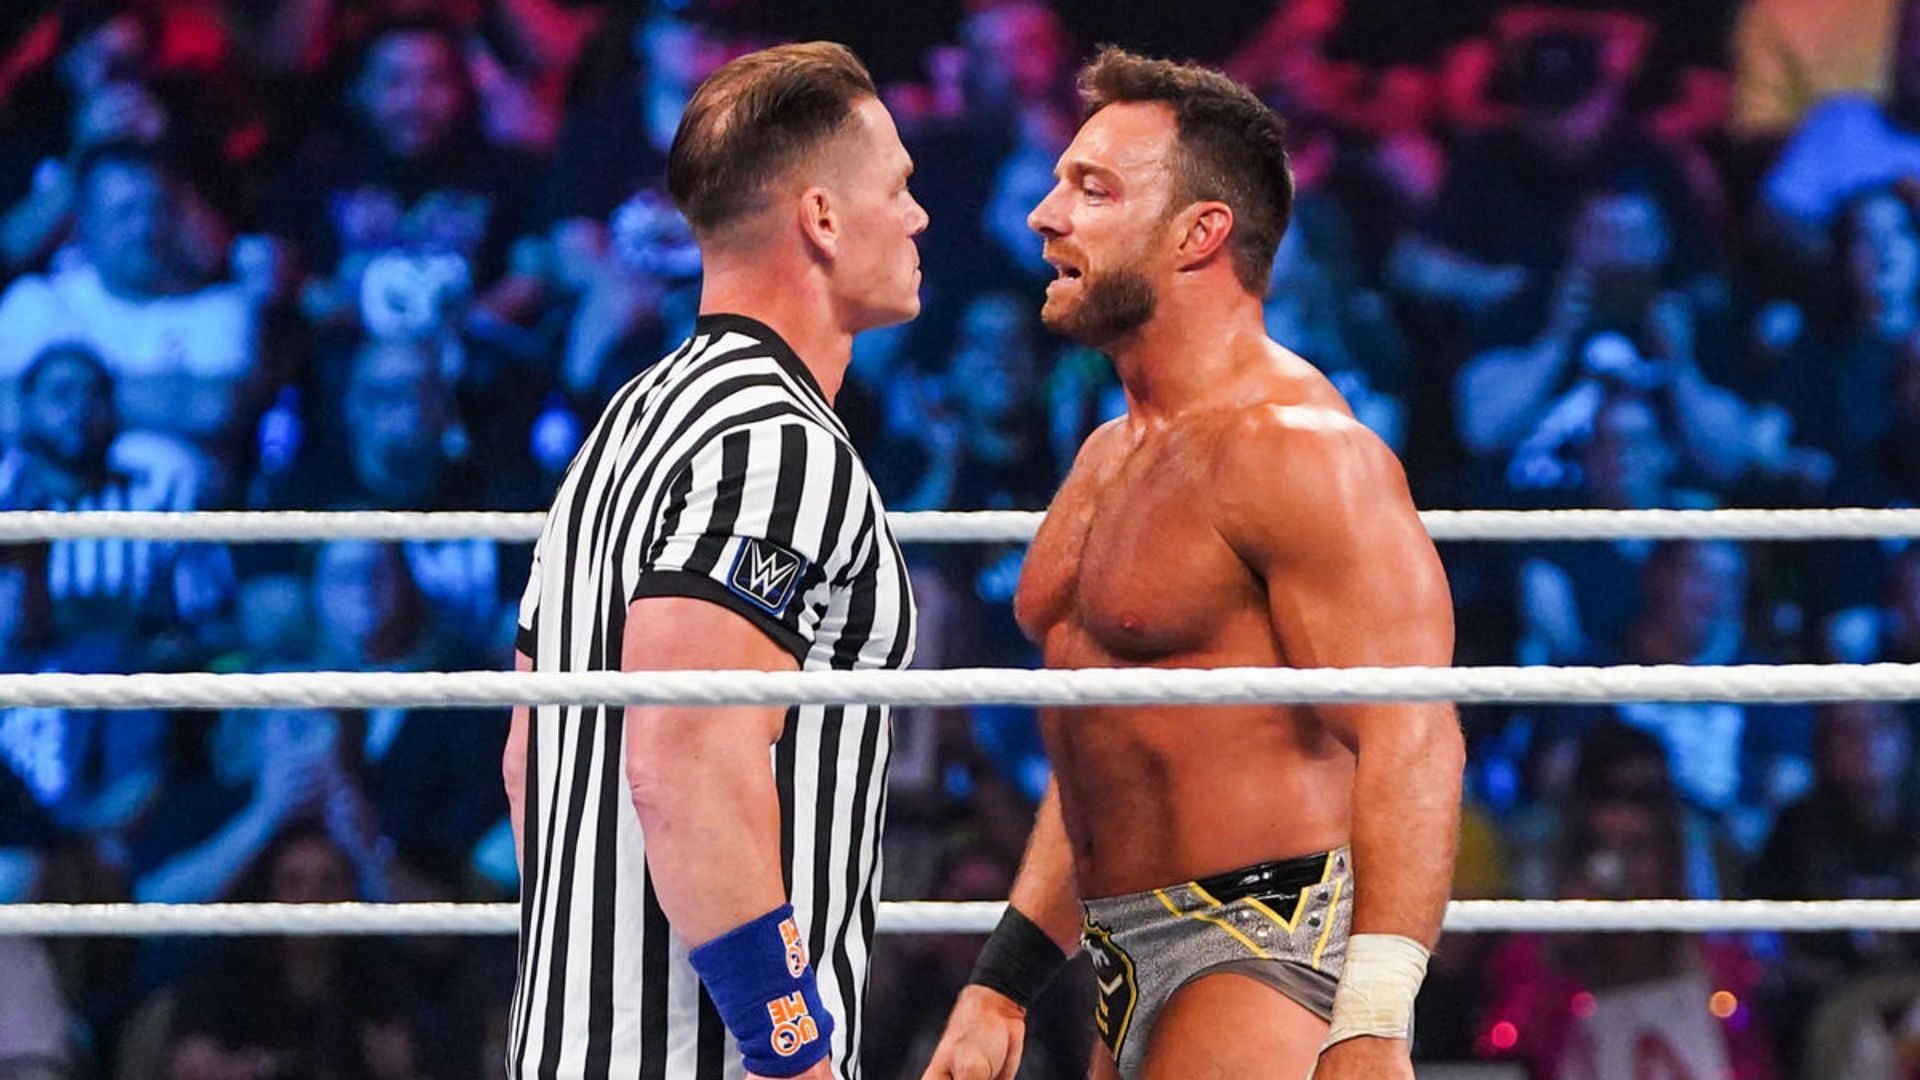 Will LA Knight feud with John Cena in WWE?